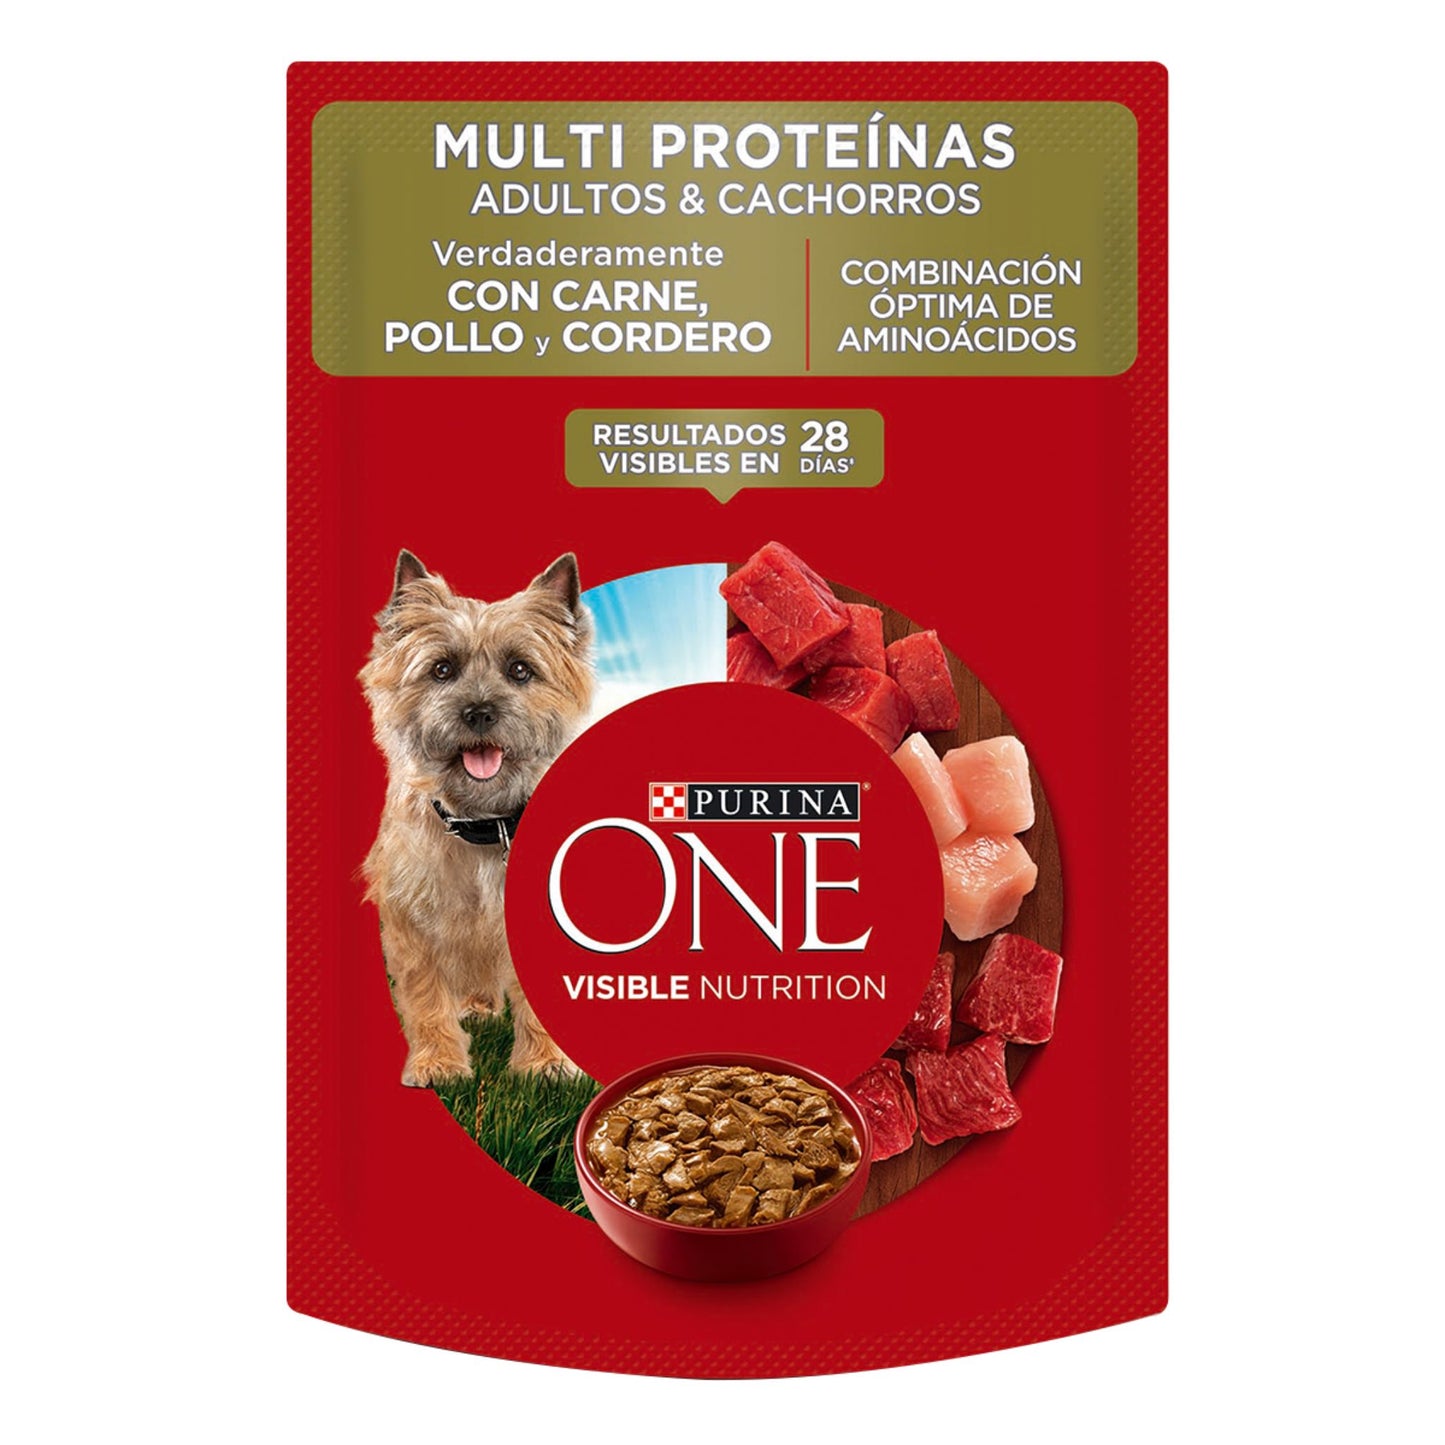 Purina ONE Perros Multi Protein Carne, Pollo, Cordero - Adulto y Cachorro 85 g